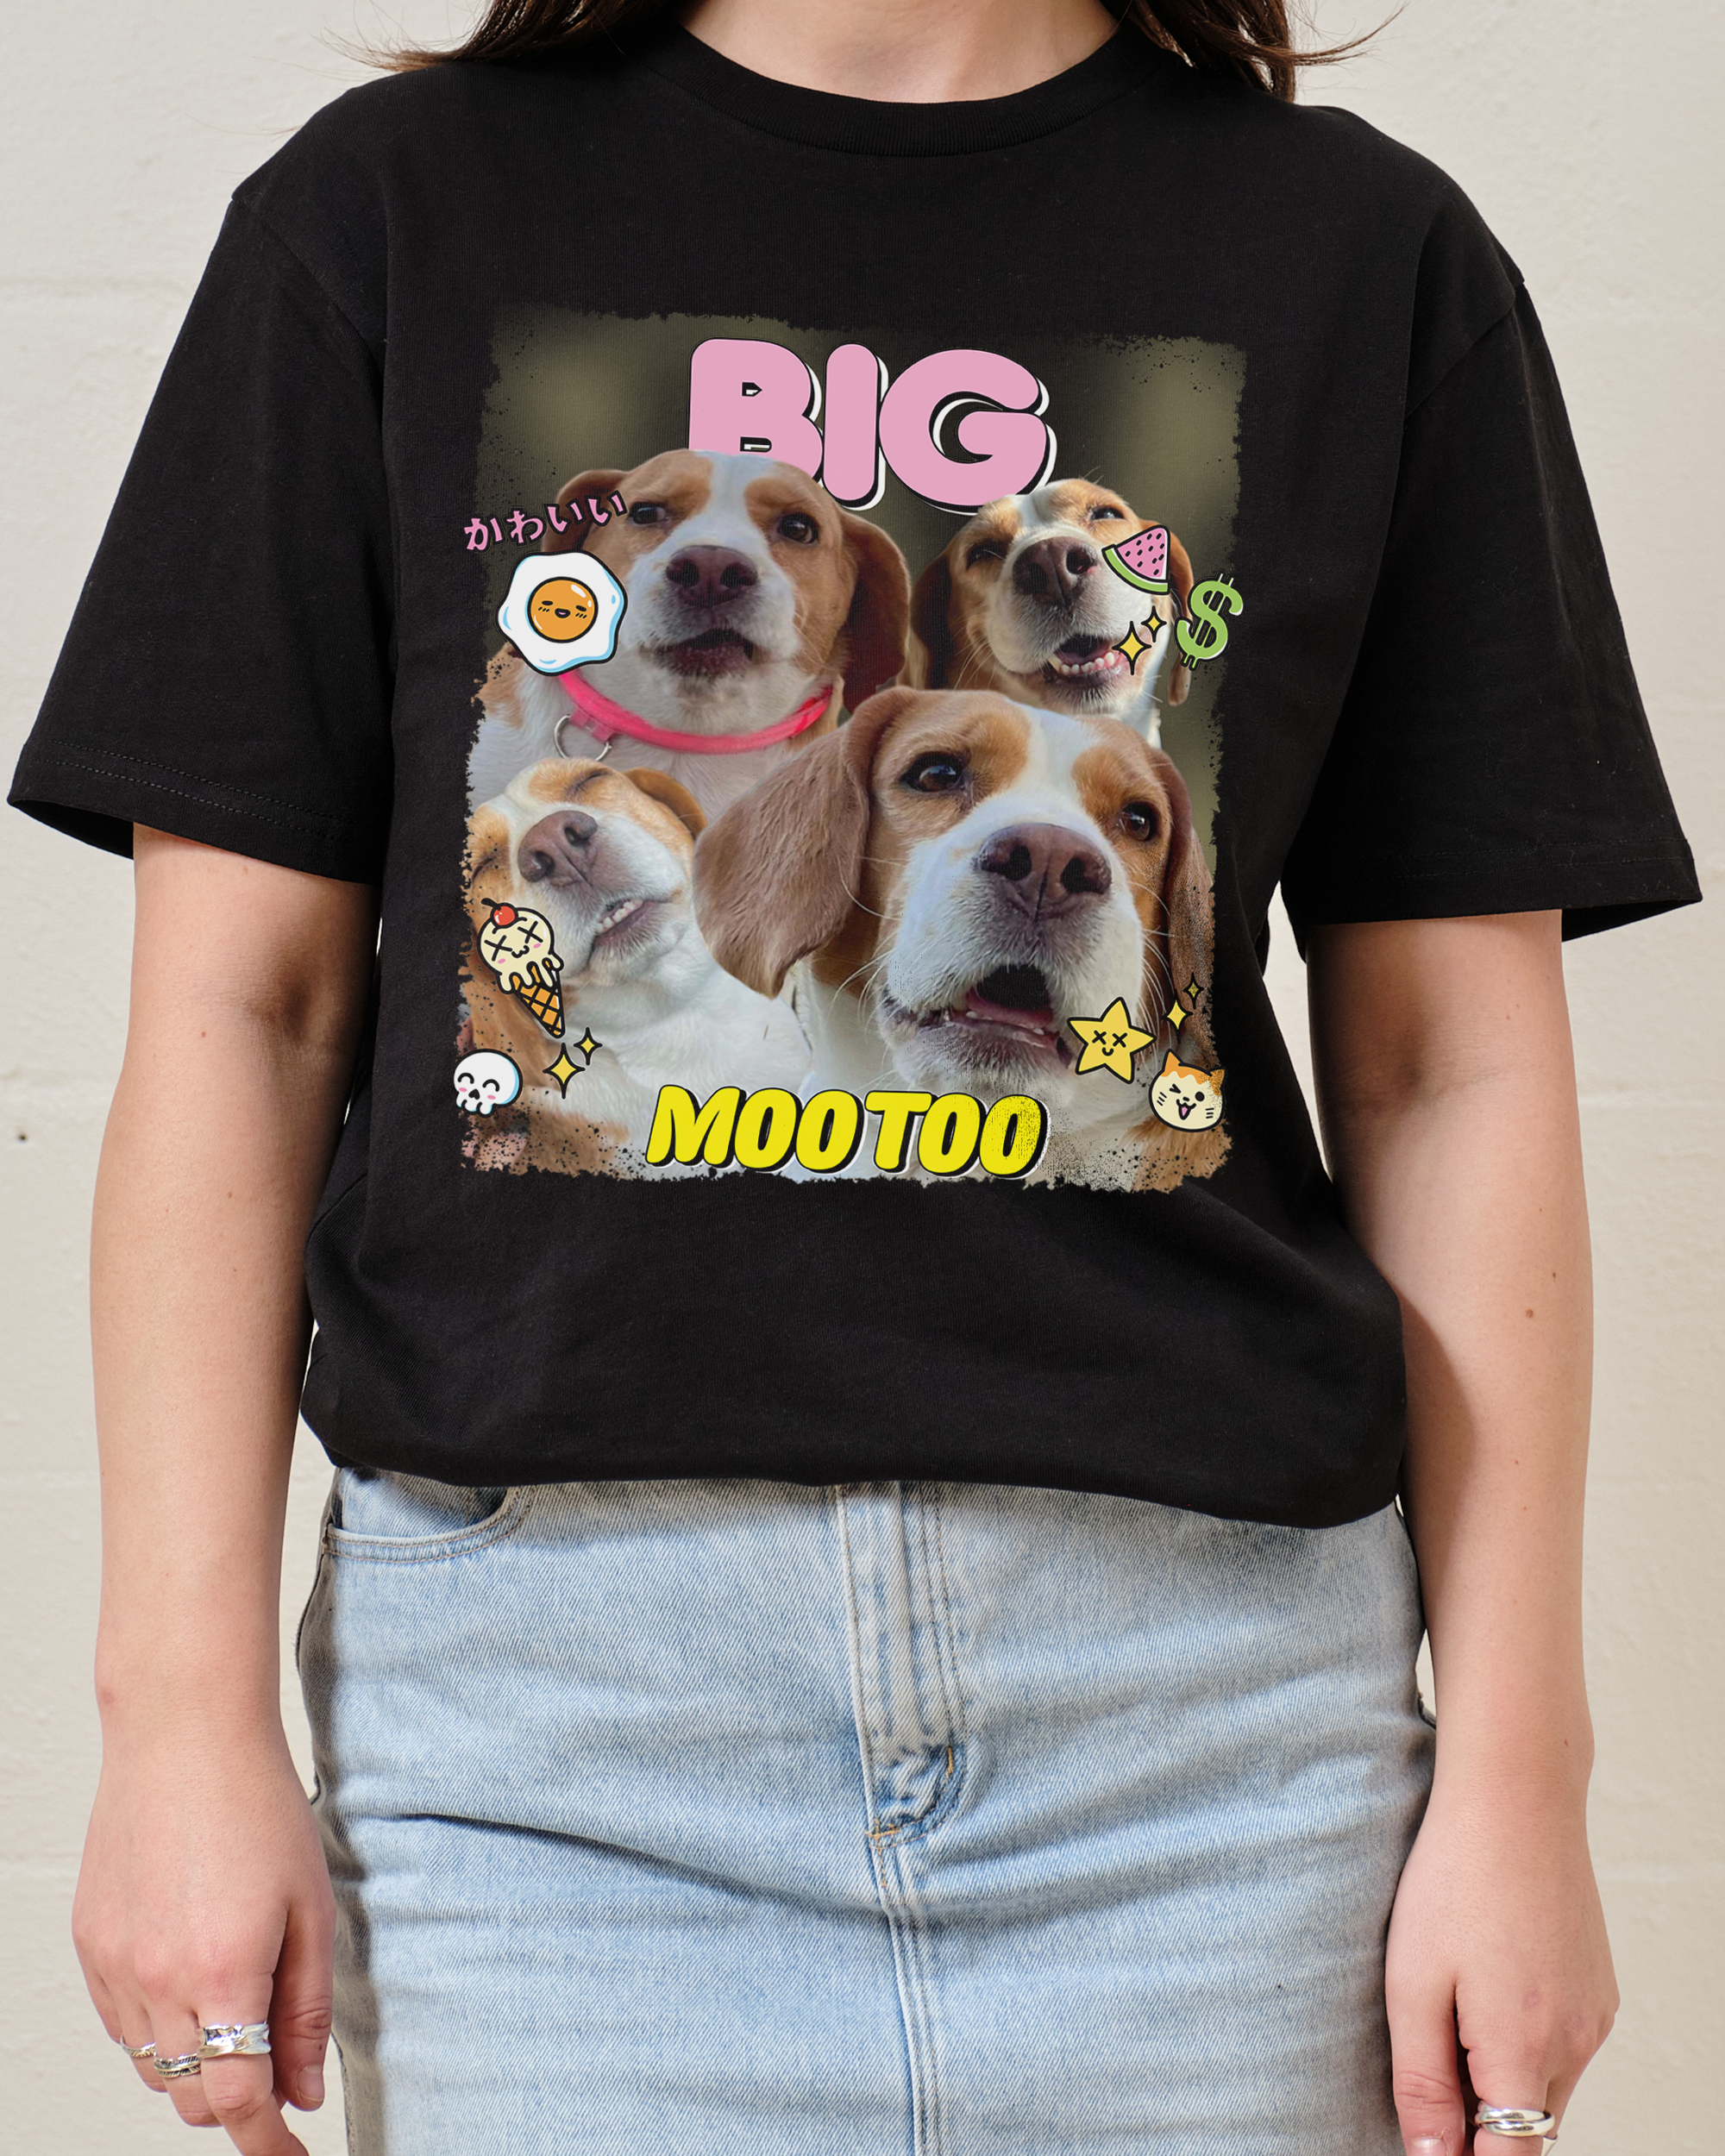 Big Mootoo T-Shirt